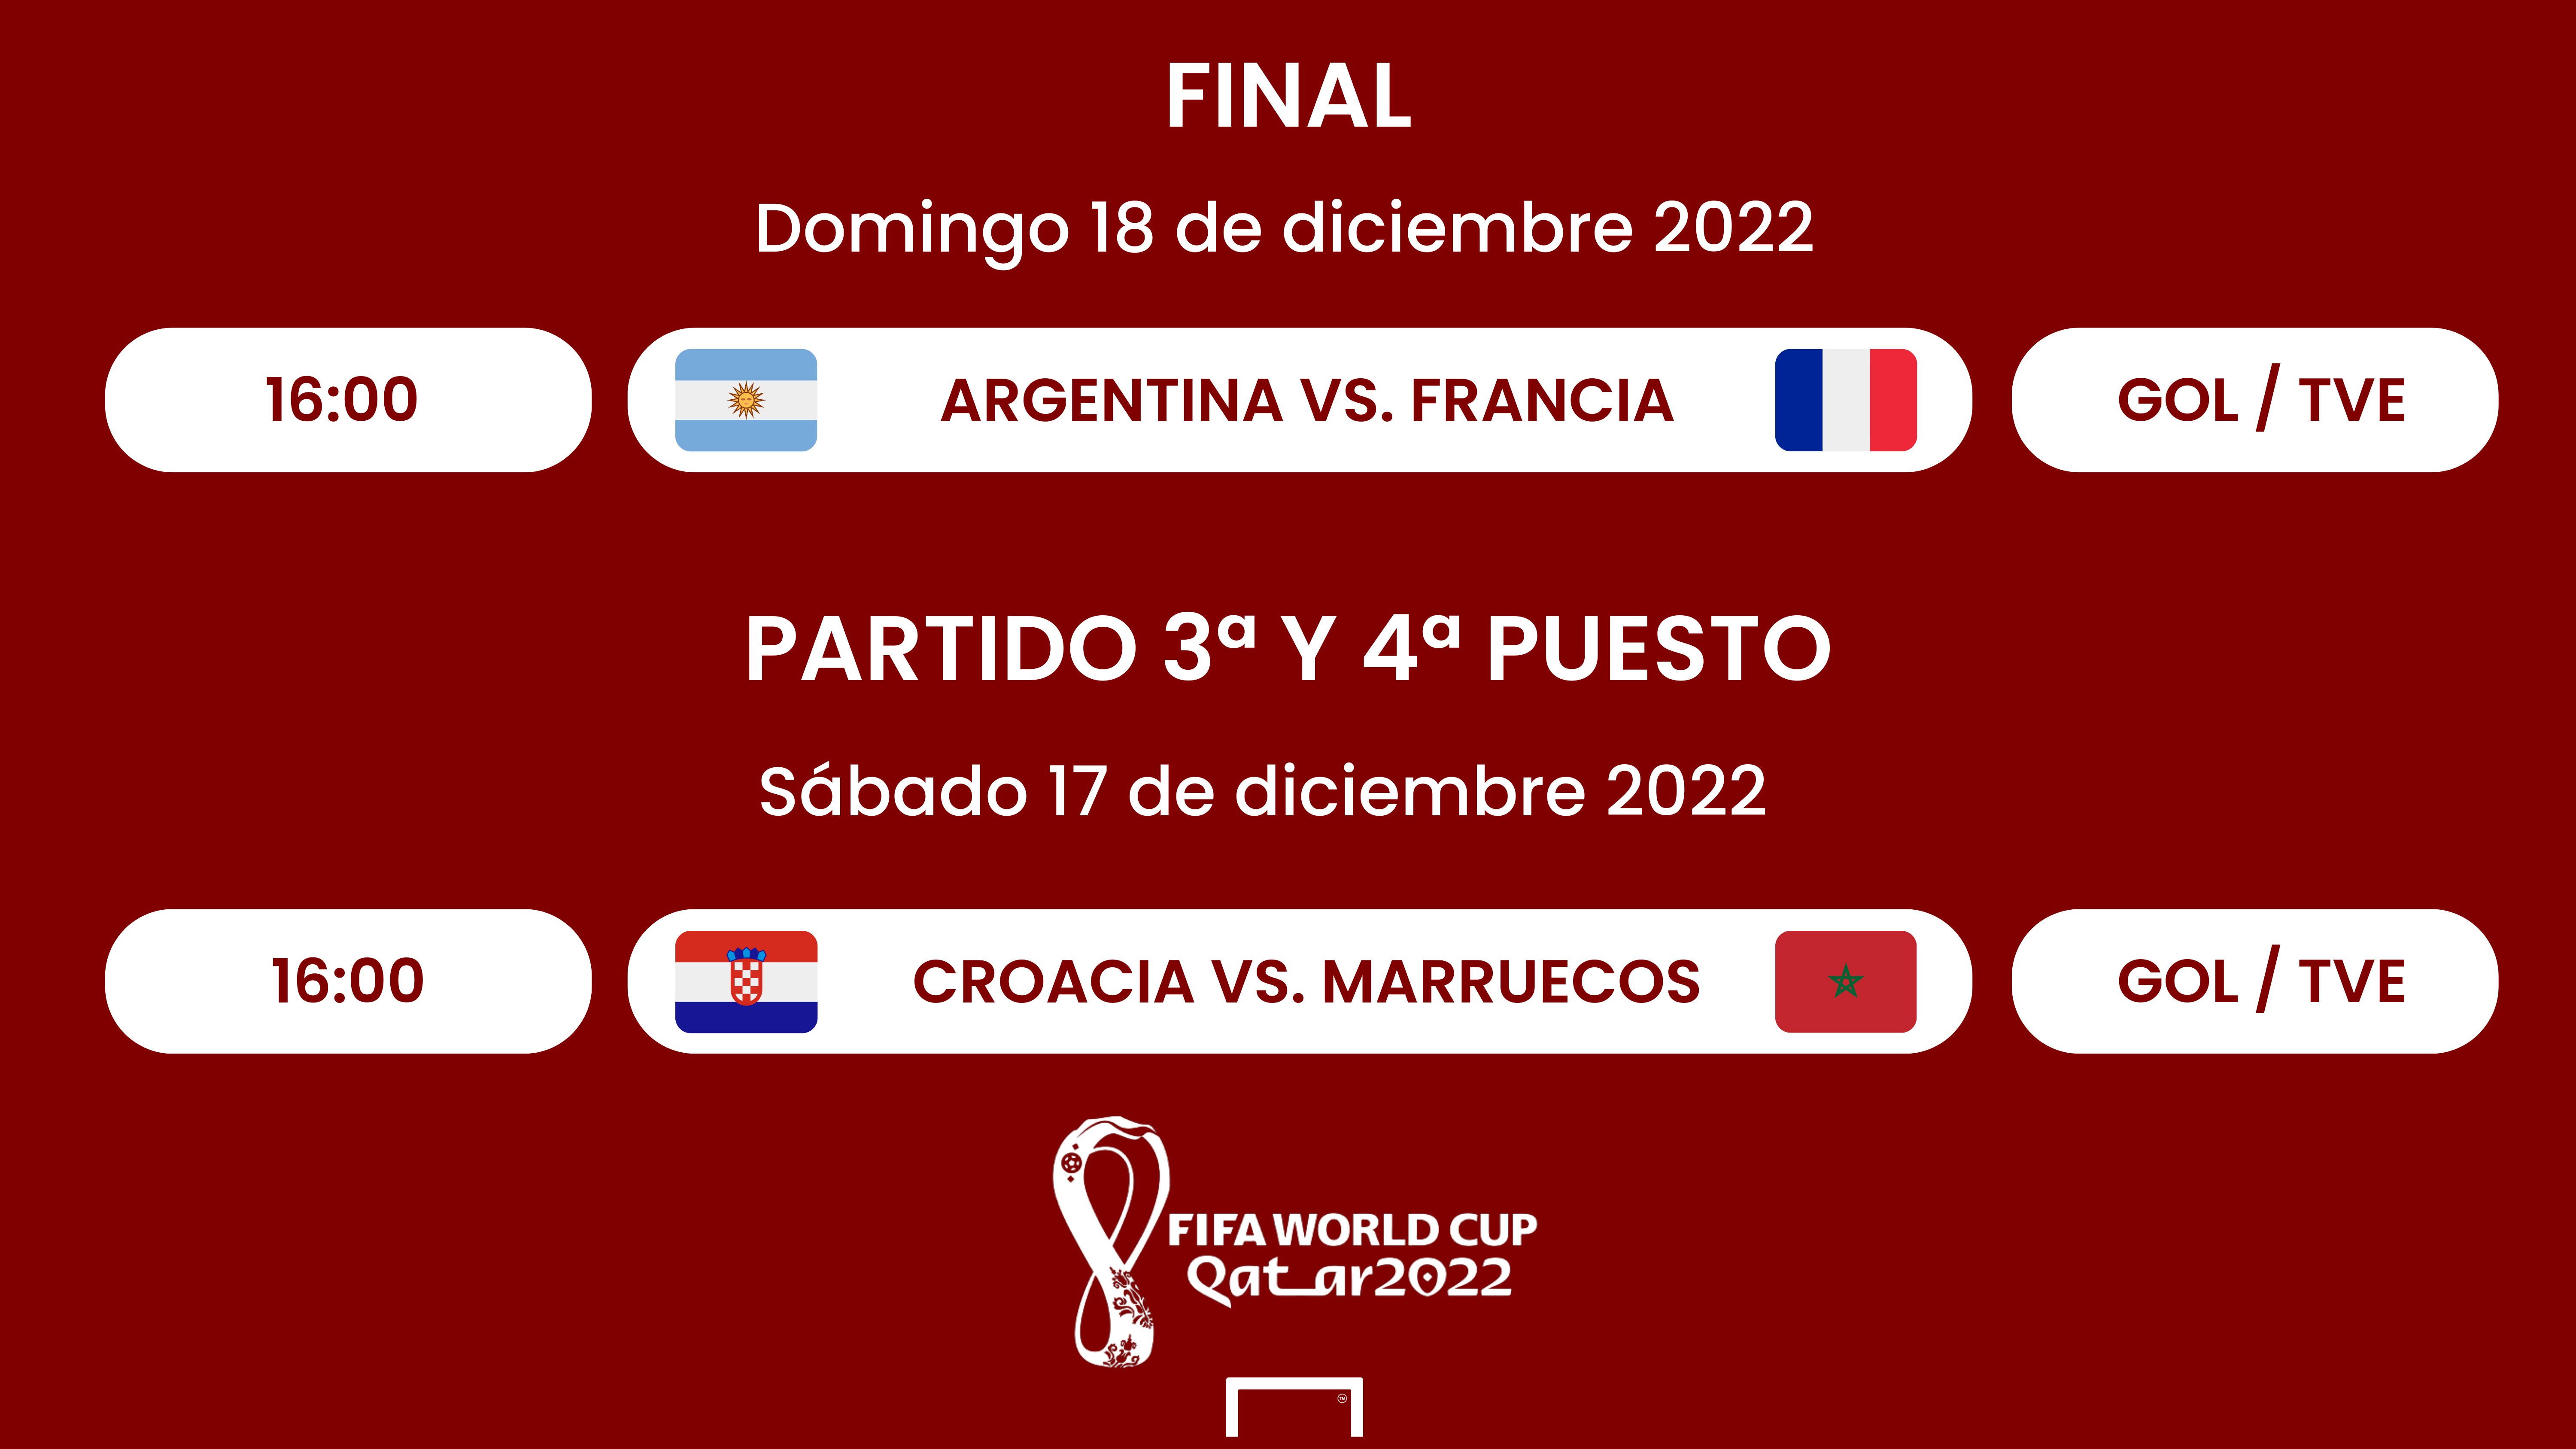 Qué se juegan mañana en Mundial Qatar 2022 | Goal.com Espana